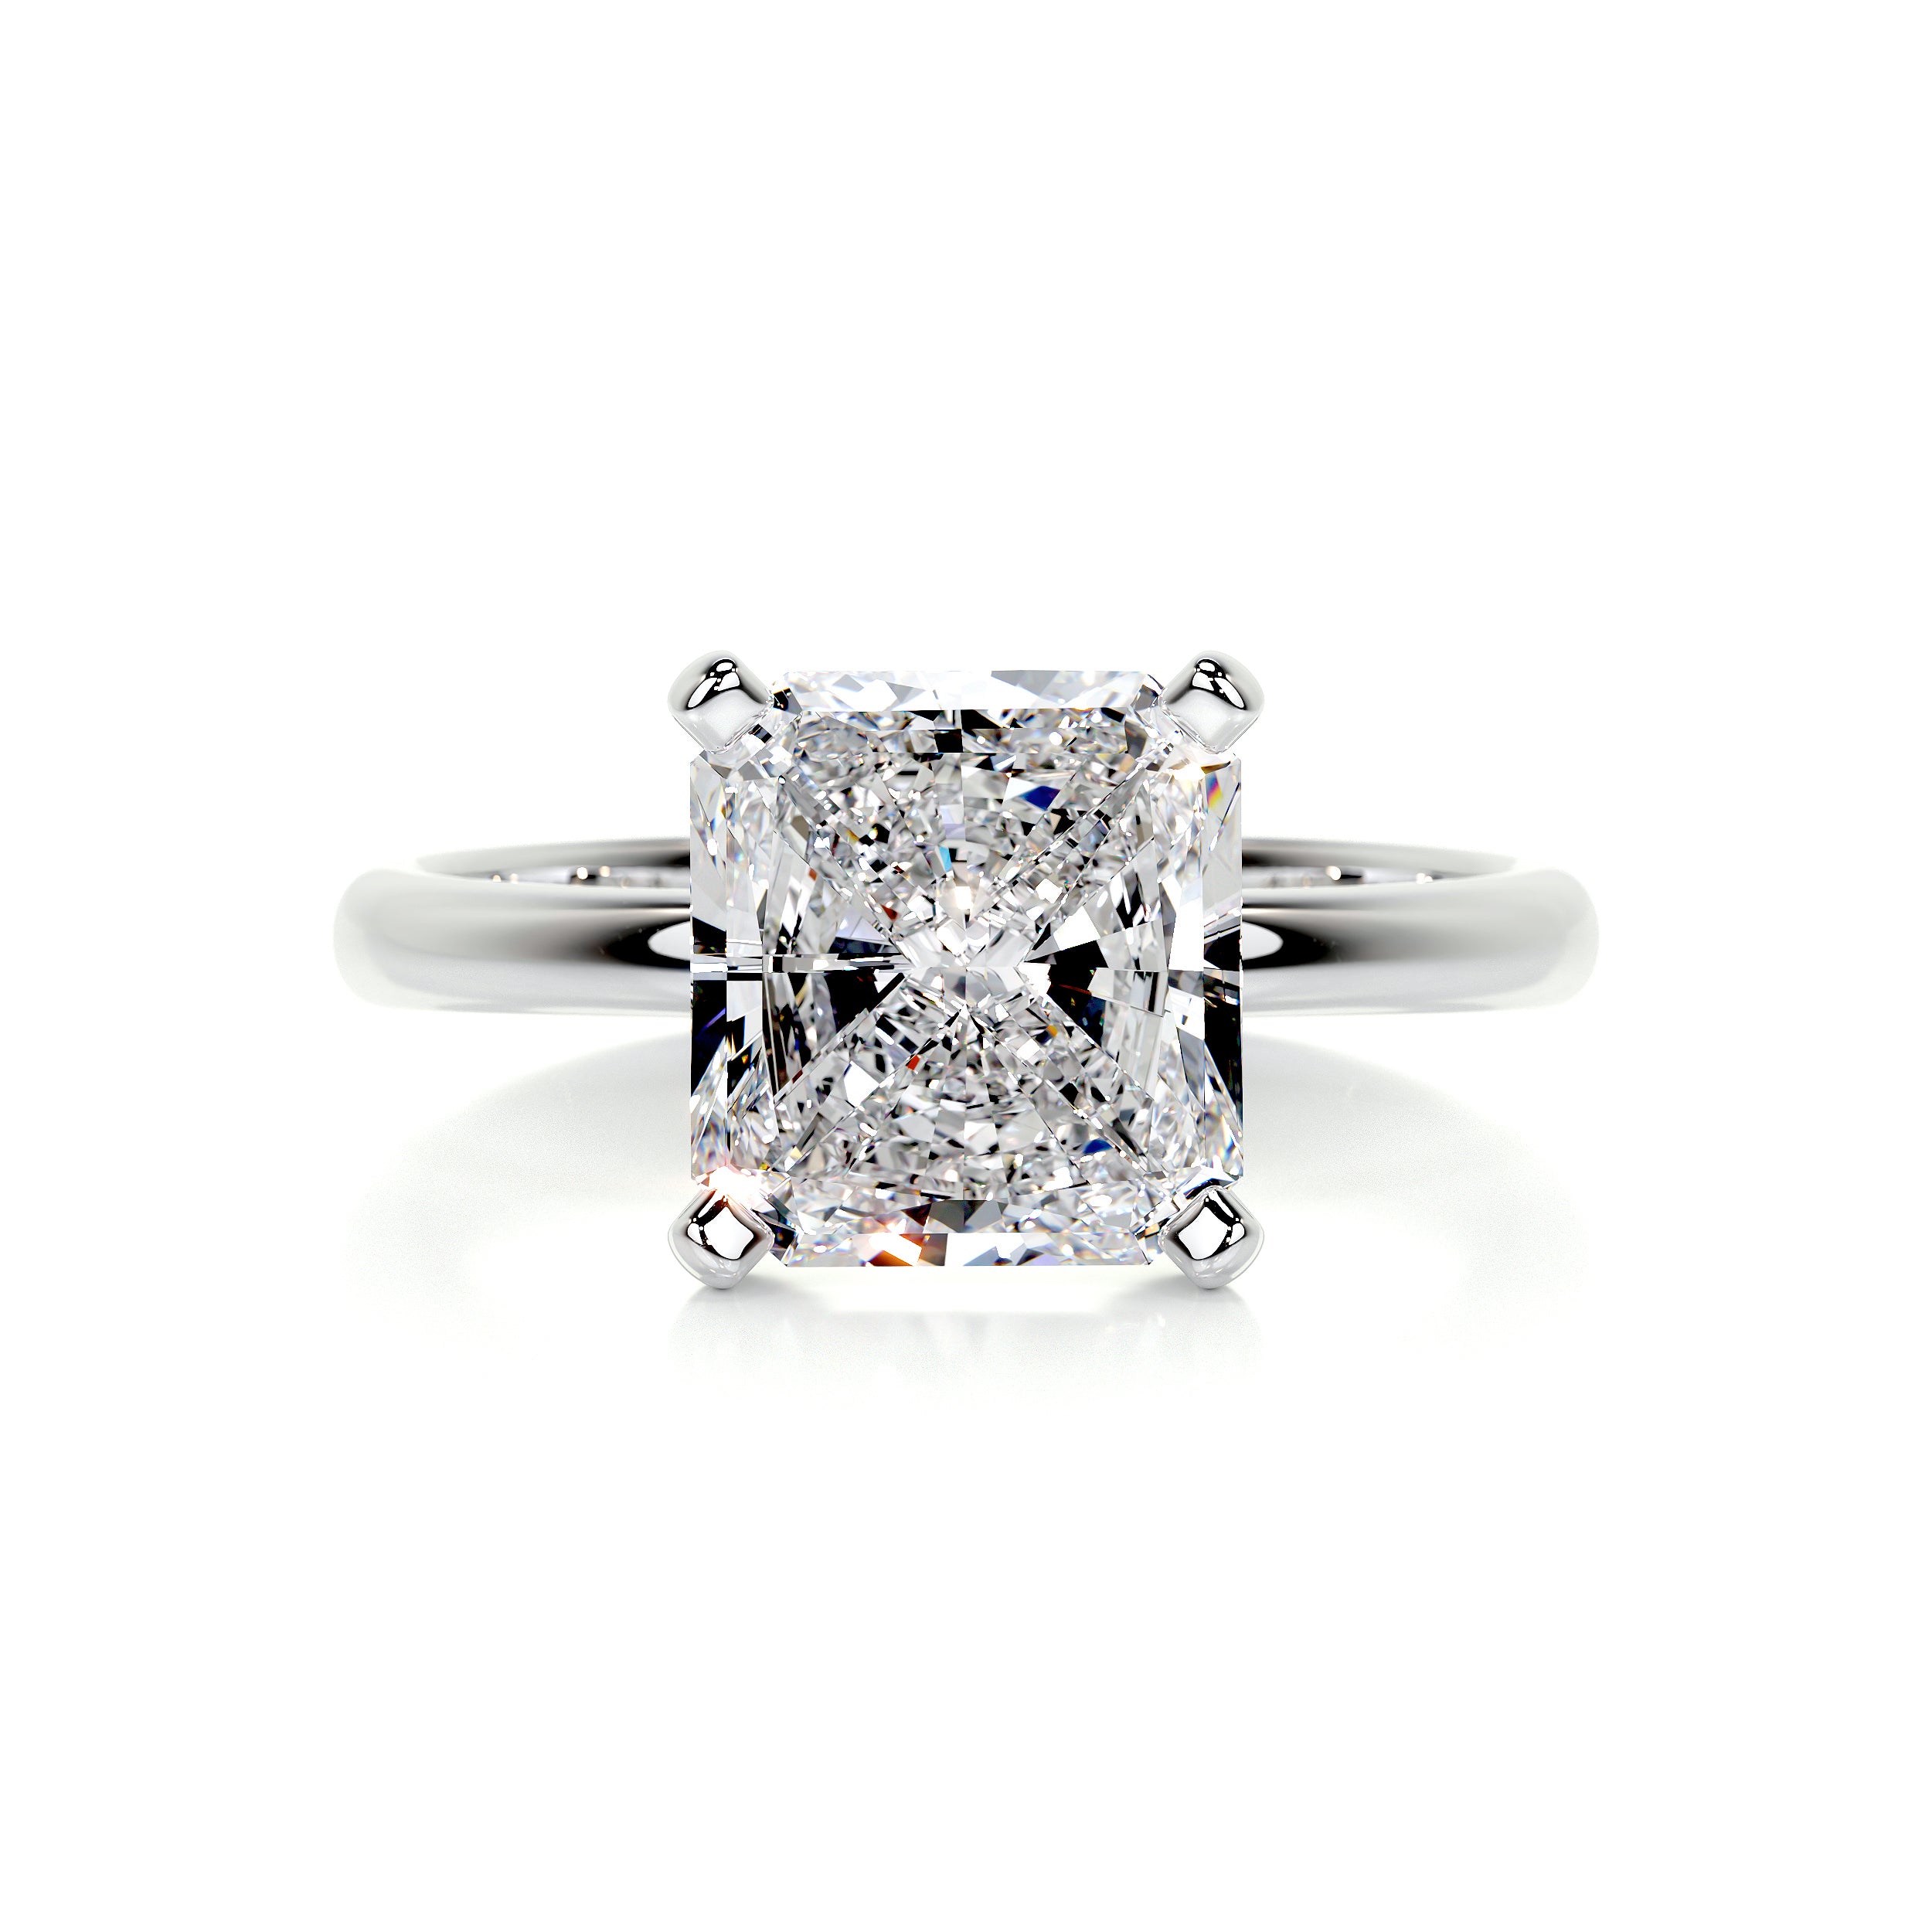 Julianna Diamond Engagement Ring -14K White Gold